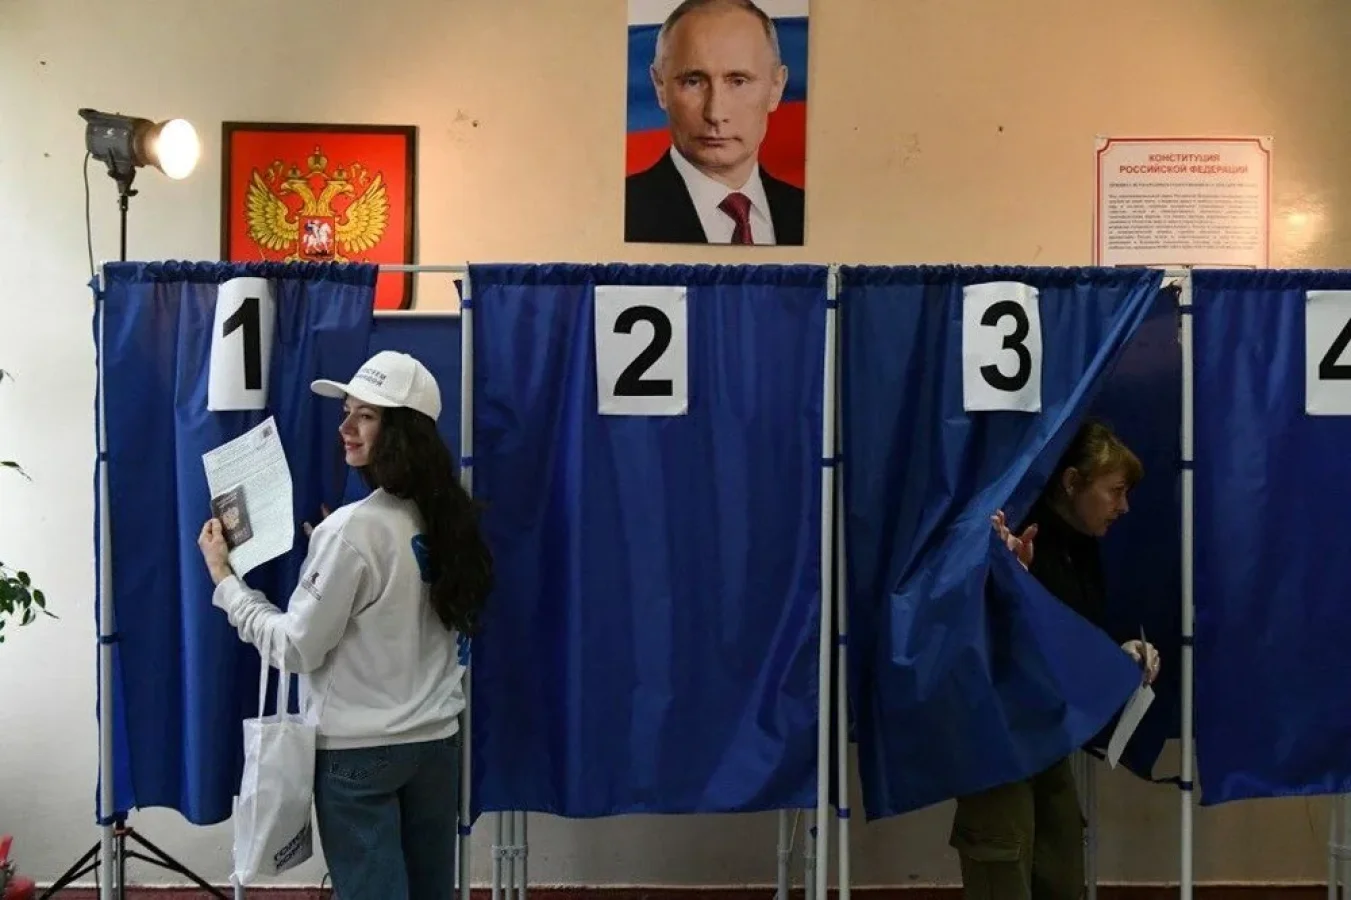 Putin %87 ile 5. kez devlet başkanı seçildi.